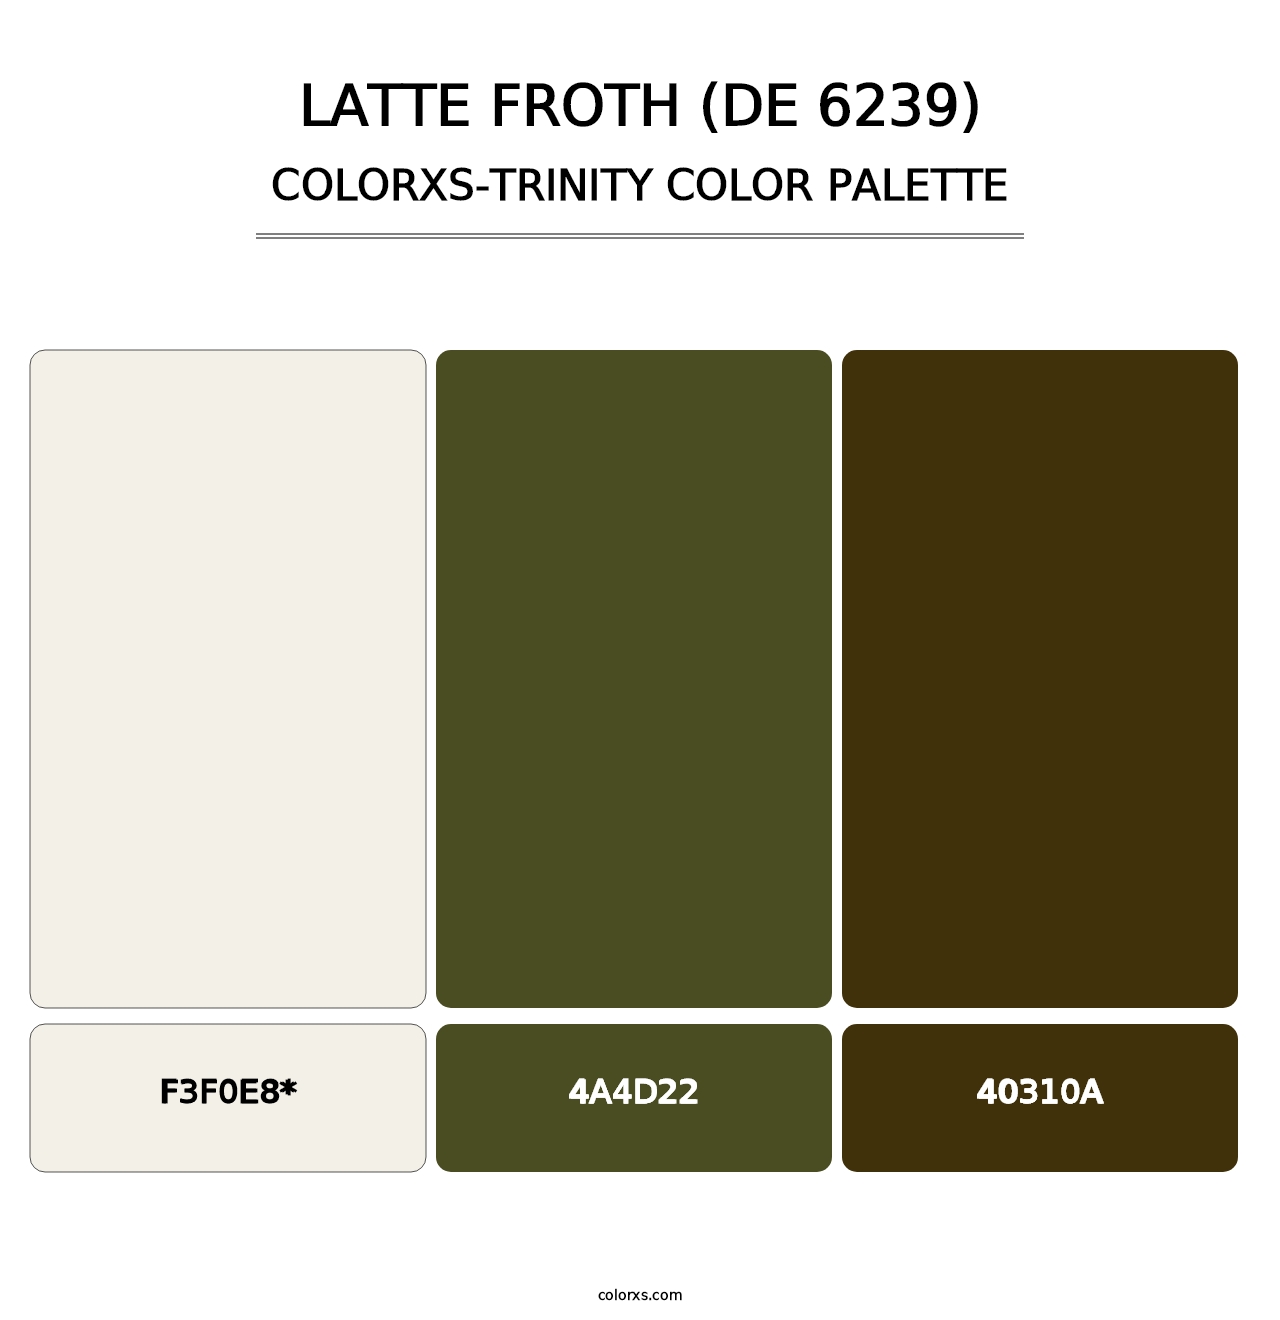 Latte Froth (DE 6239) - Colorxs Trinity Palette